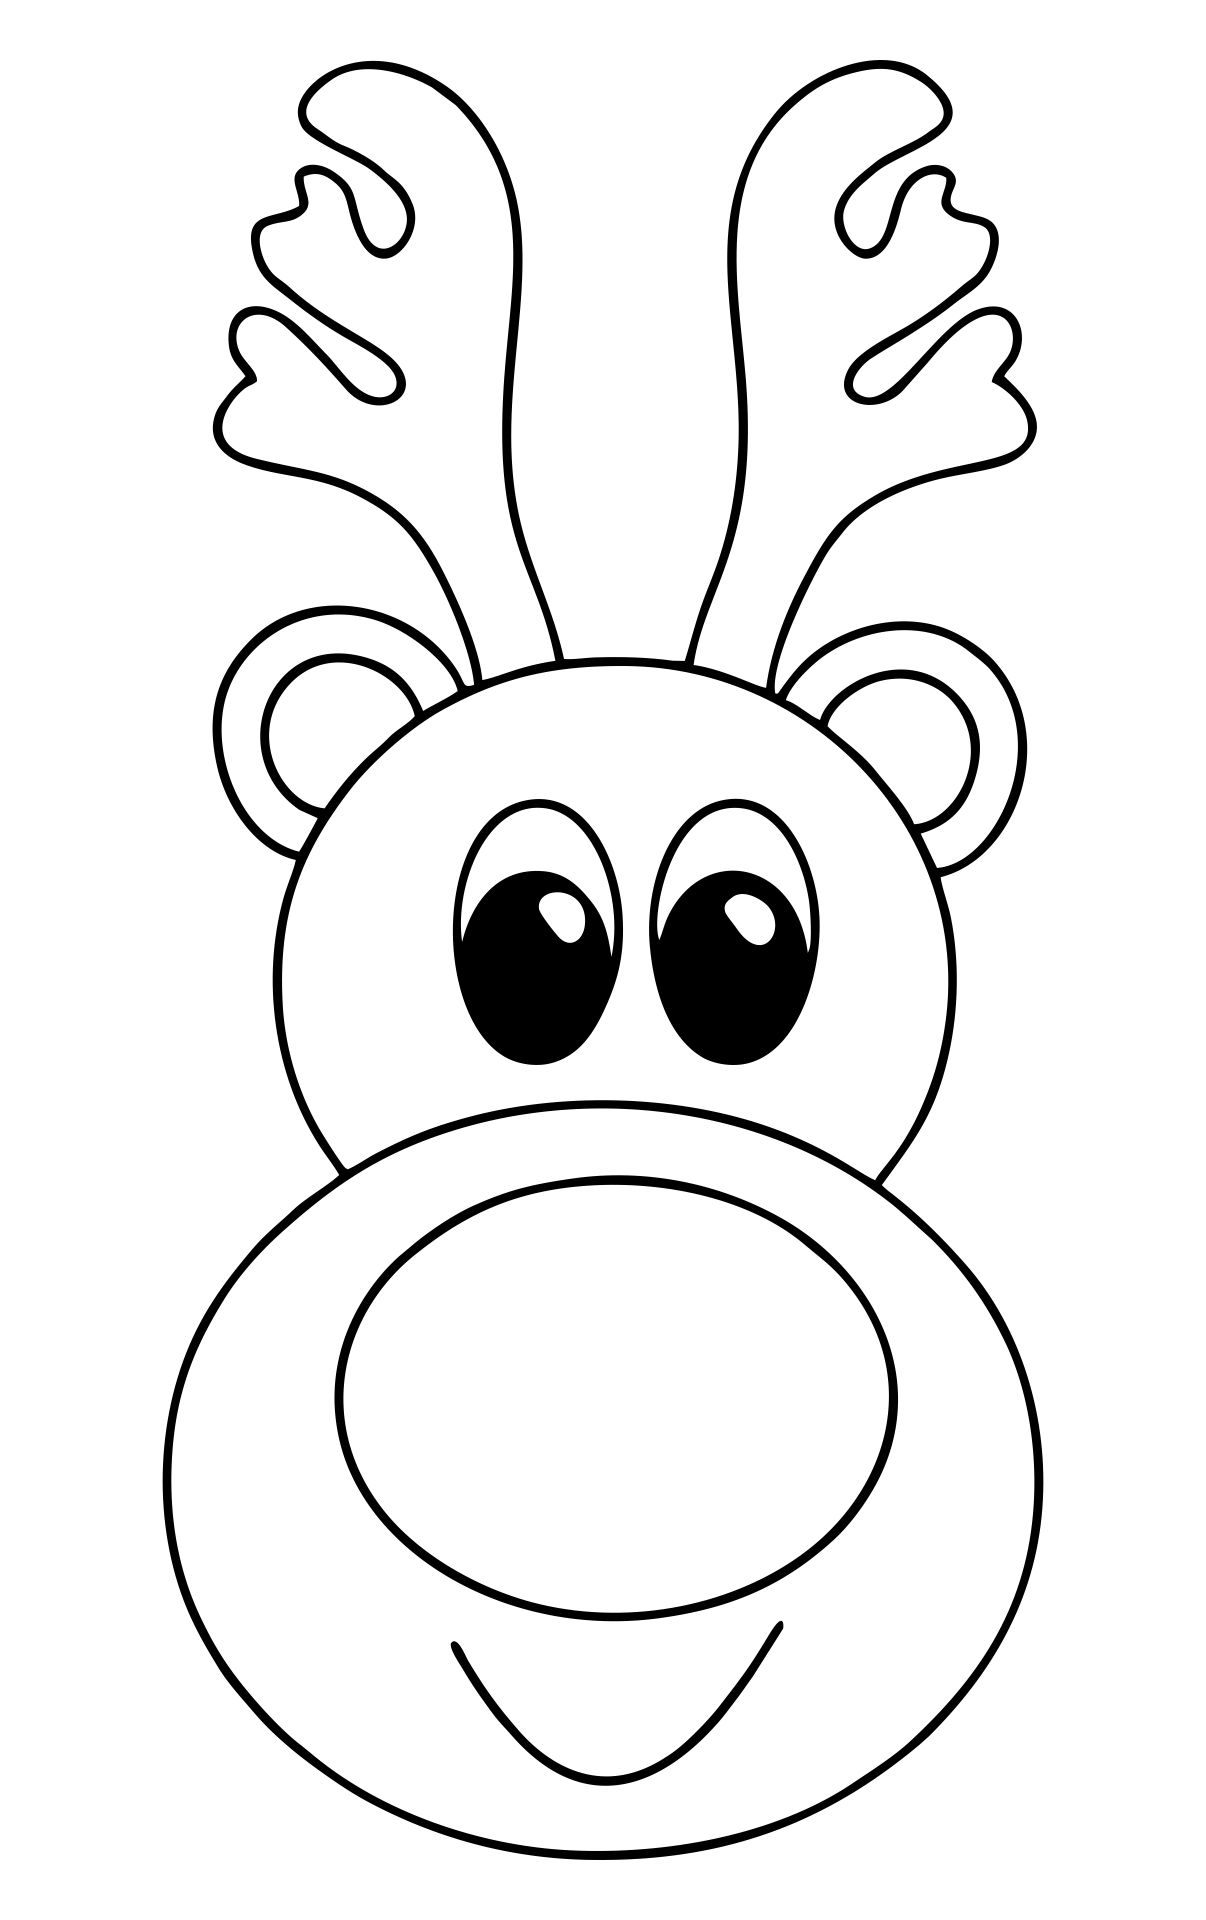 10 Best Reindeer Free Printable Faces Reindeer Face Kids Christmas Coloring Pages Reindeer Printable